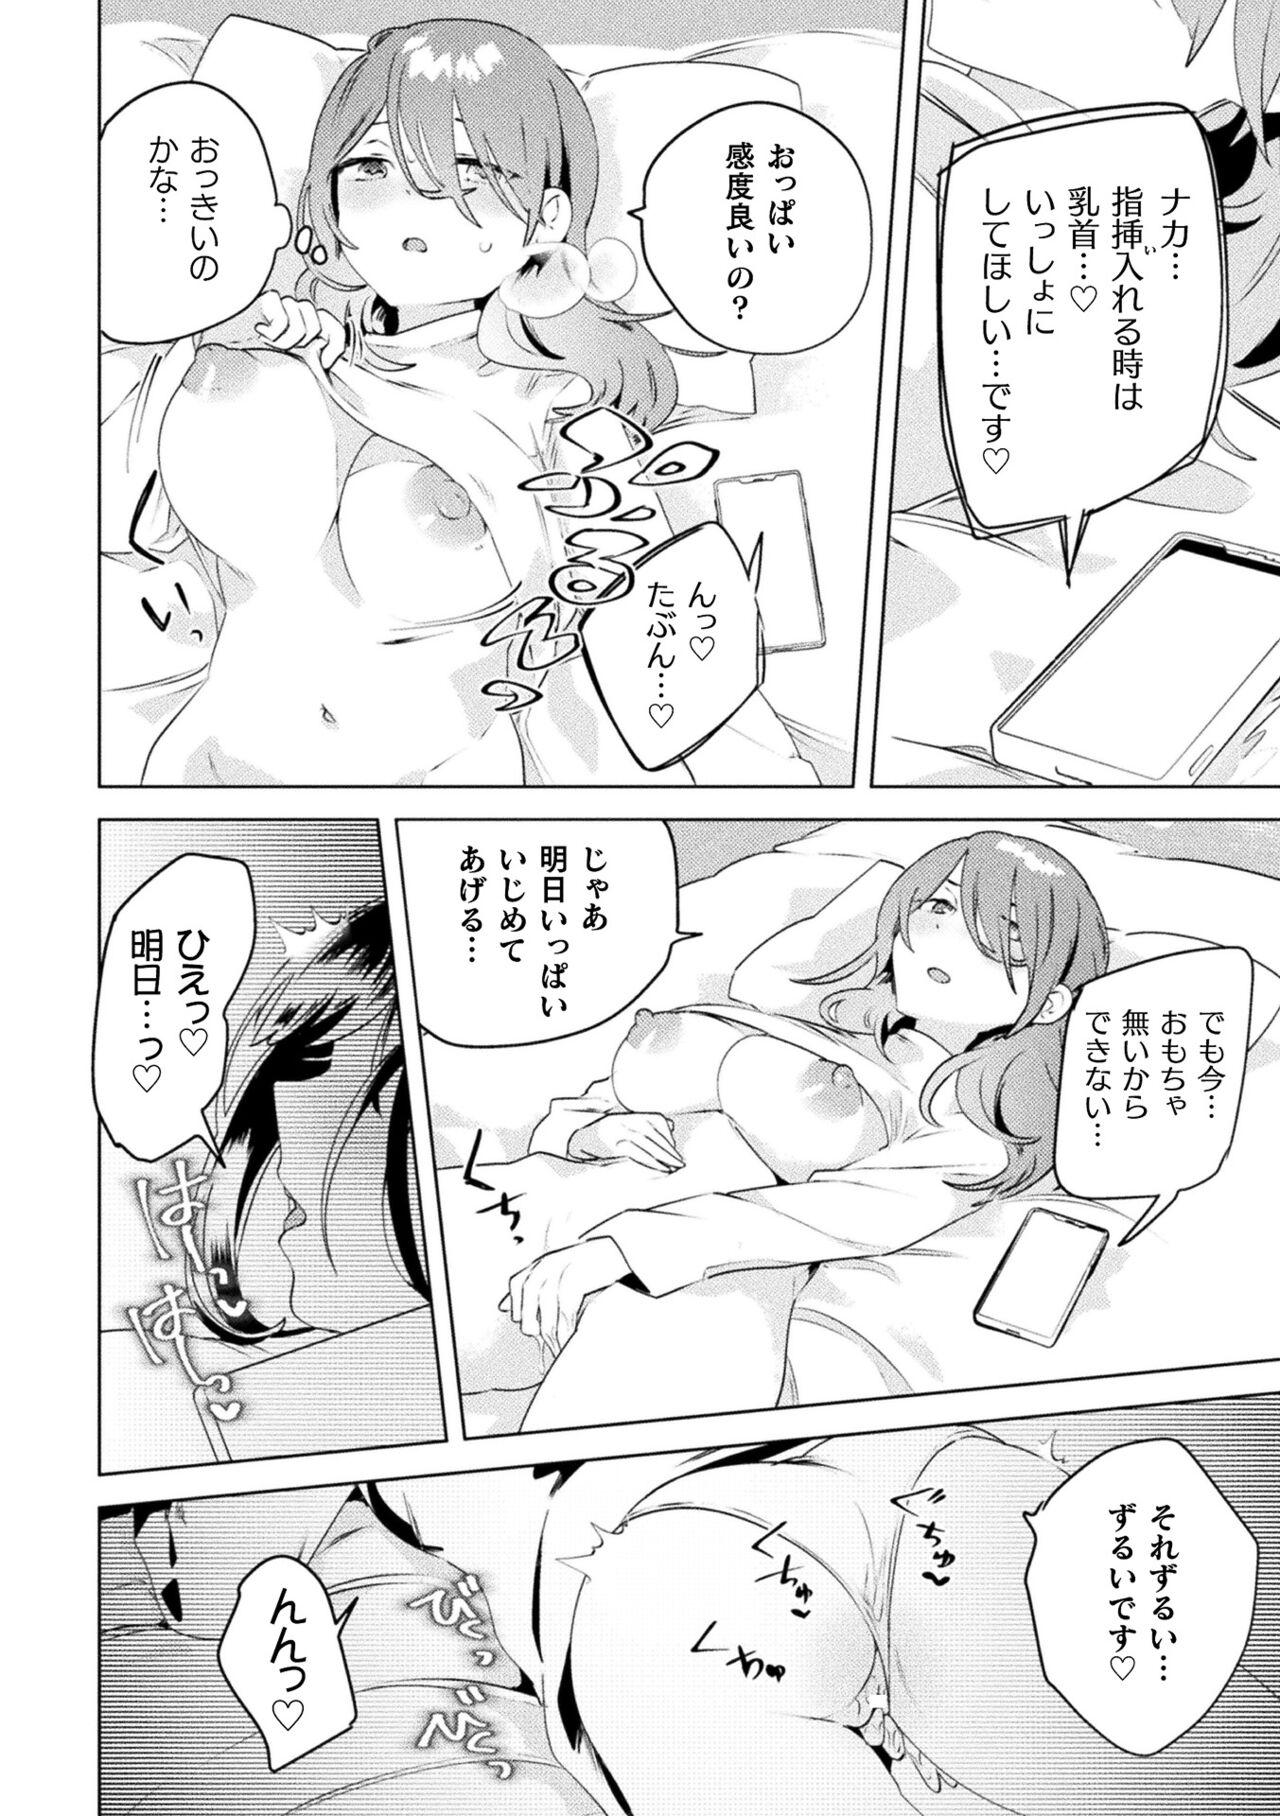 Whatsapp 2D Comic Magazine Mamakatsu Yuri Ecchi Vol. 3 Oral Sex Porn - Page 6